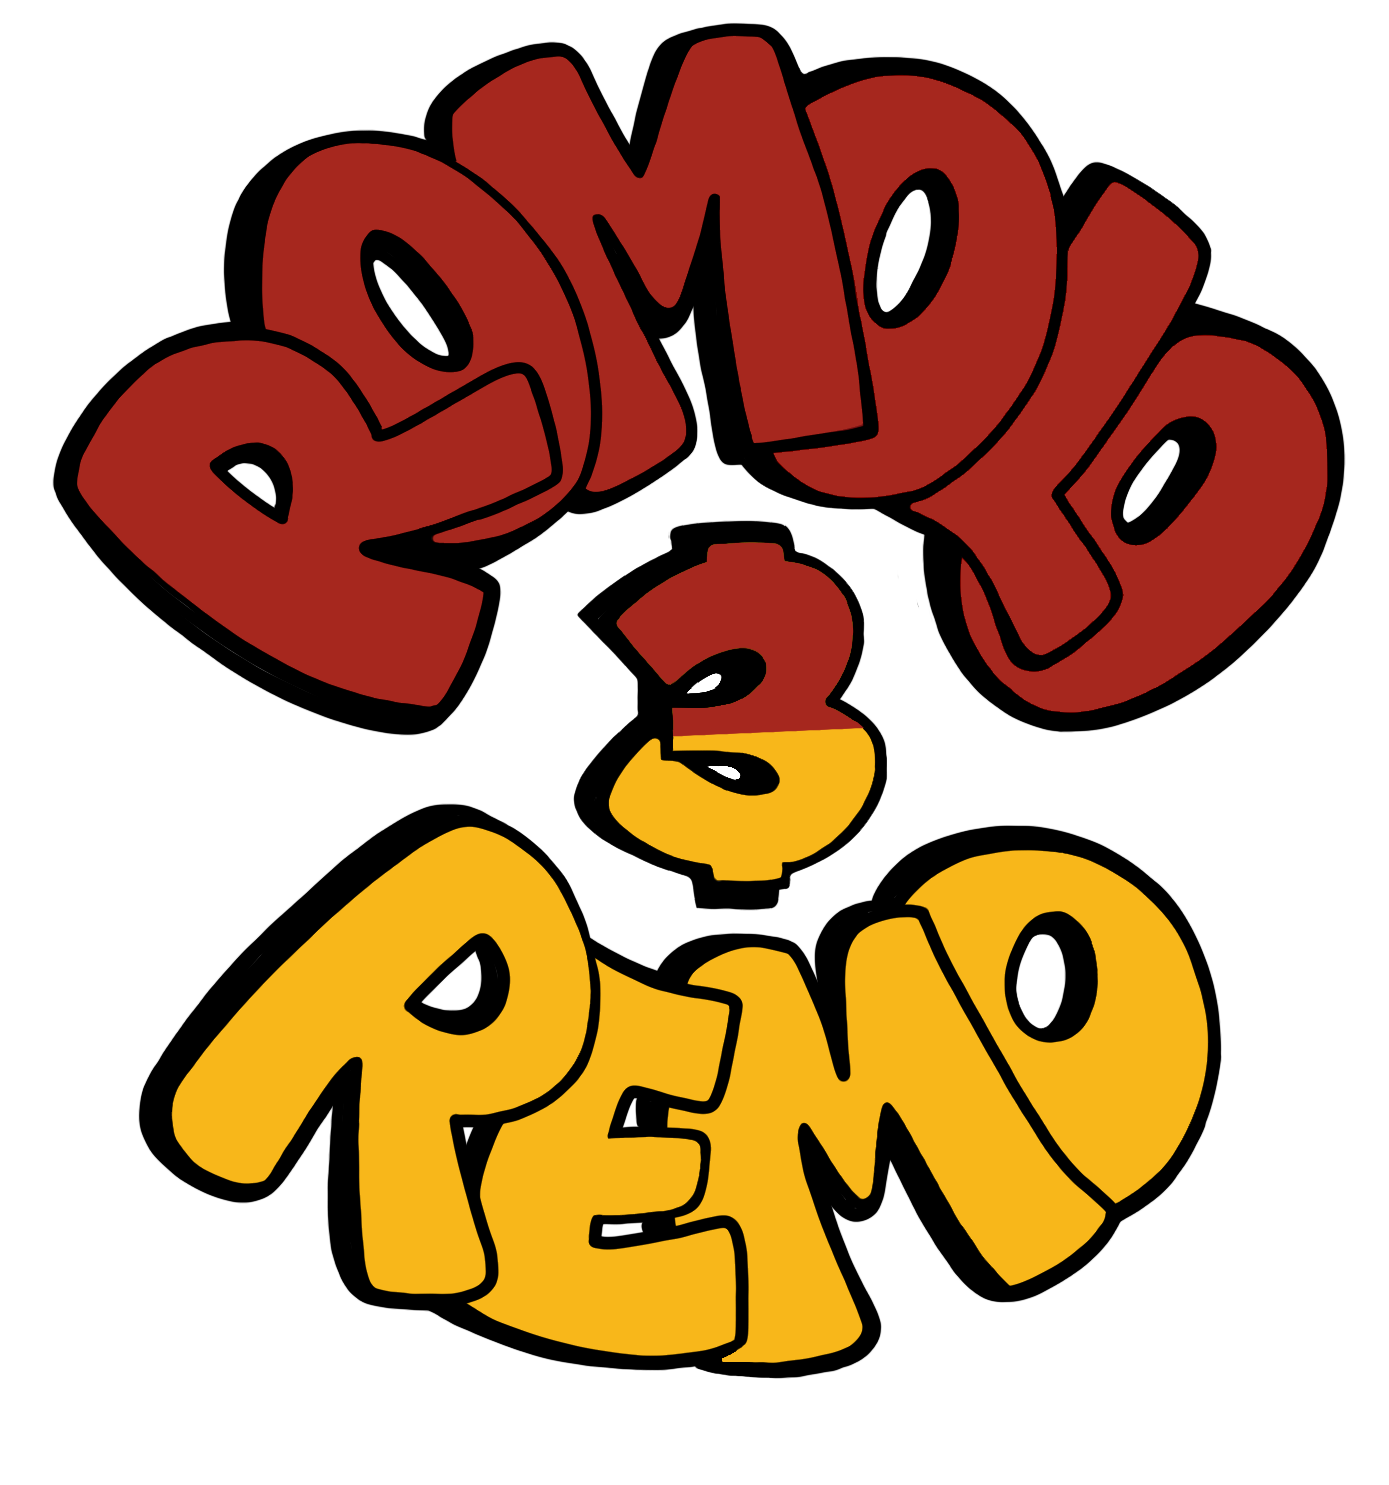 Romolo &amp; Remo Roman-Style Artisanal Tomato Sauces